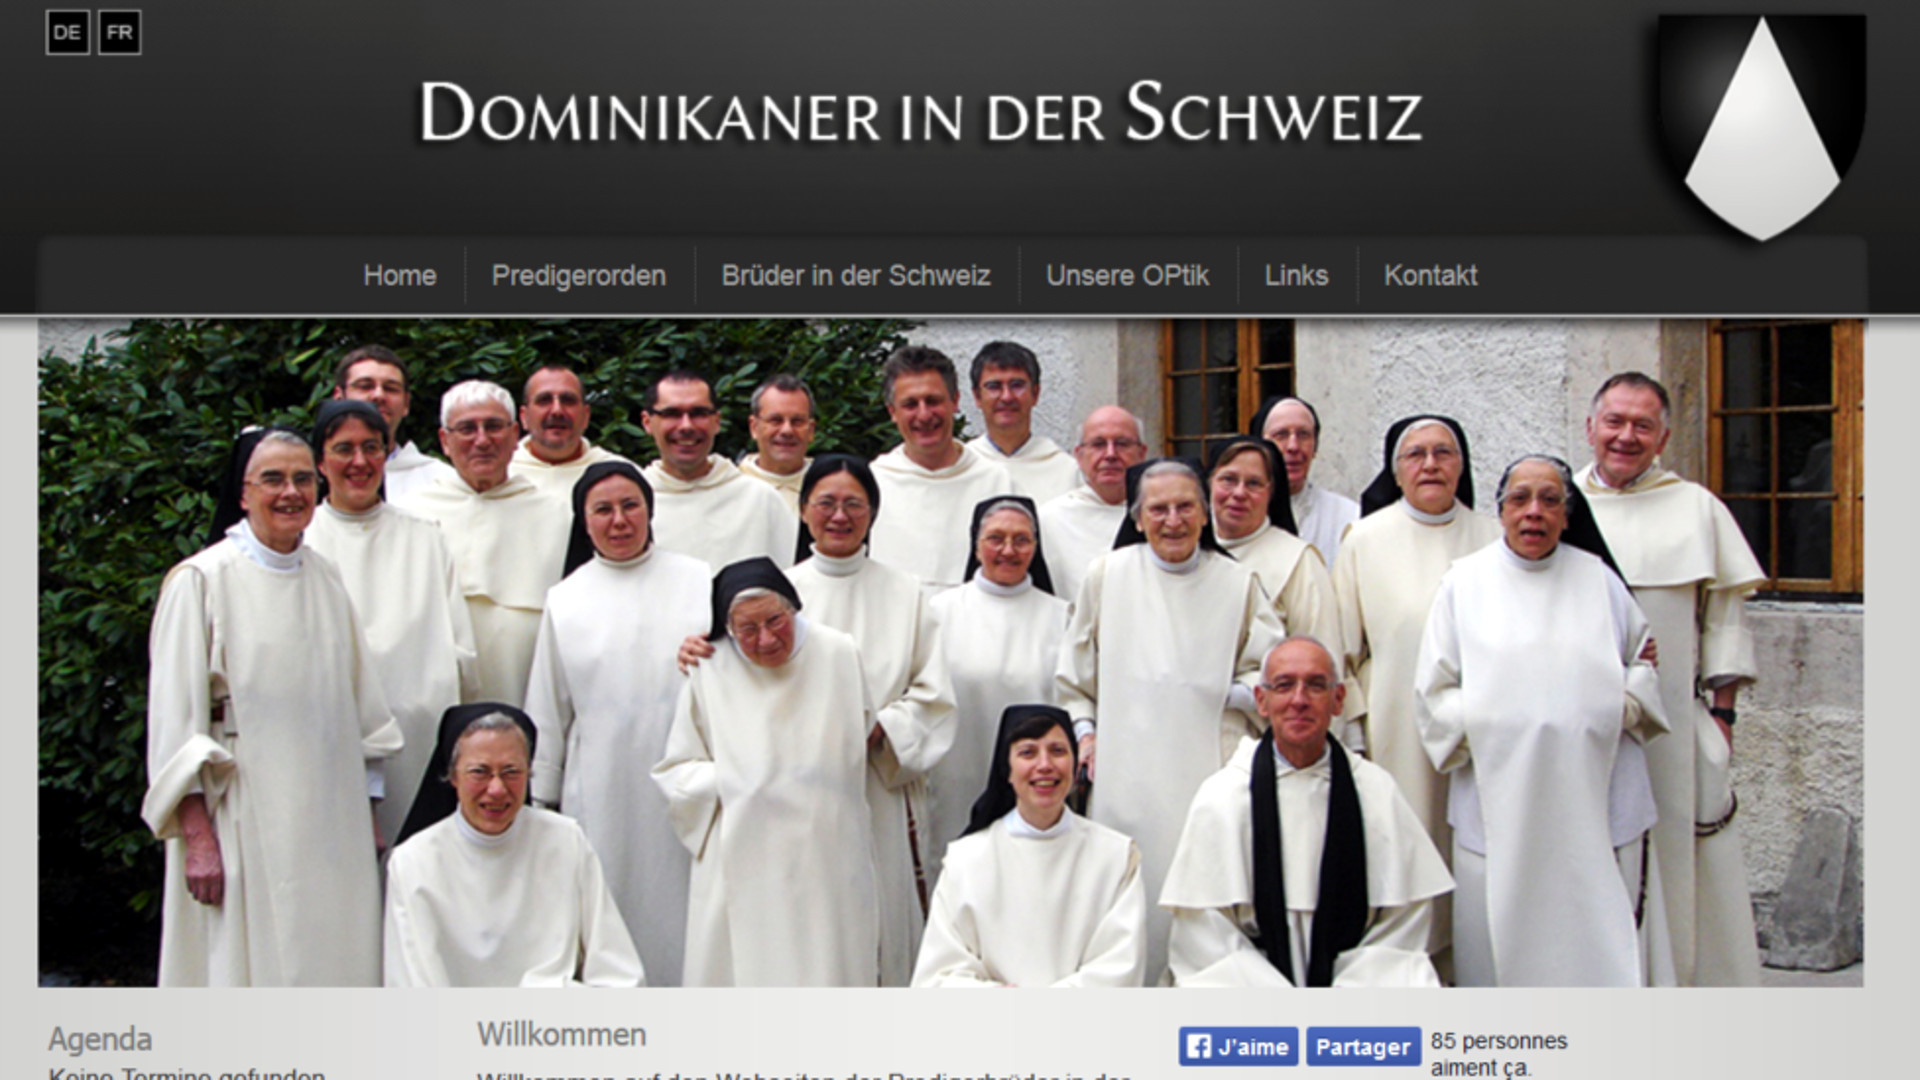 Dominikaner in der Schweiz